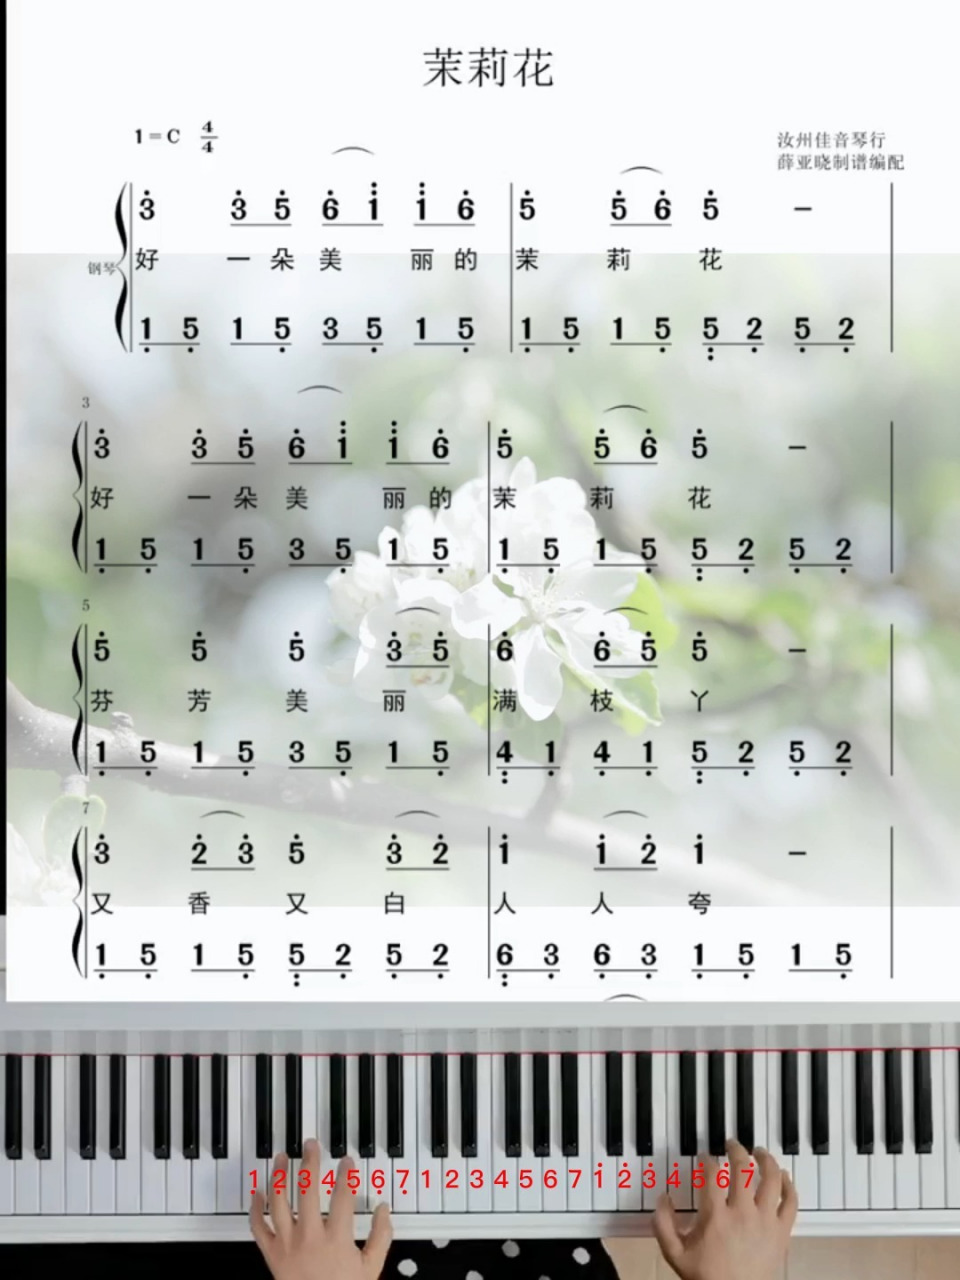 民歌经典《茉莉花》最清晰的简谱教会你弹奏哦!